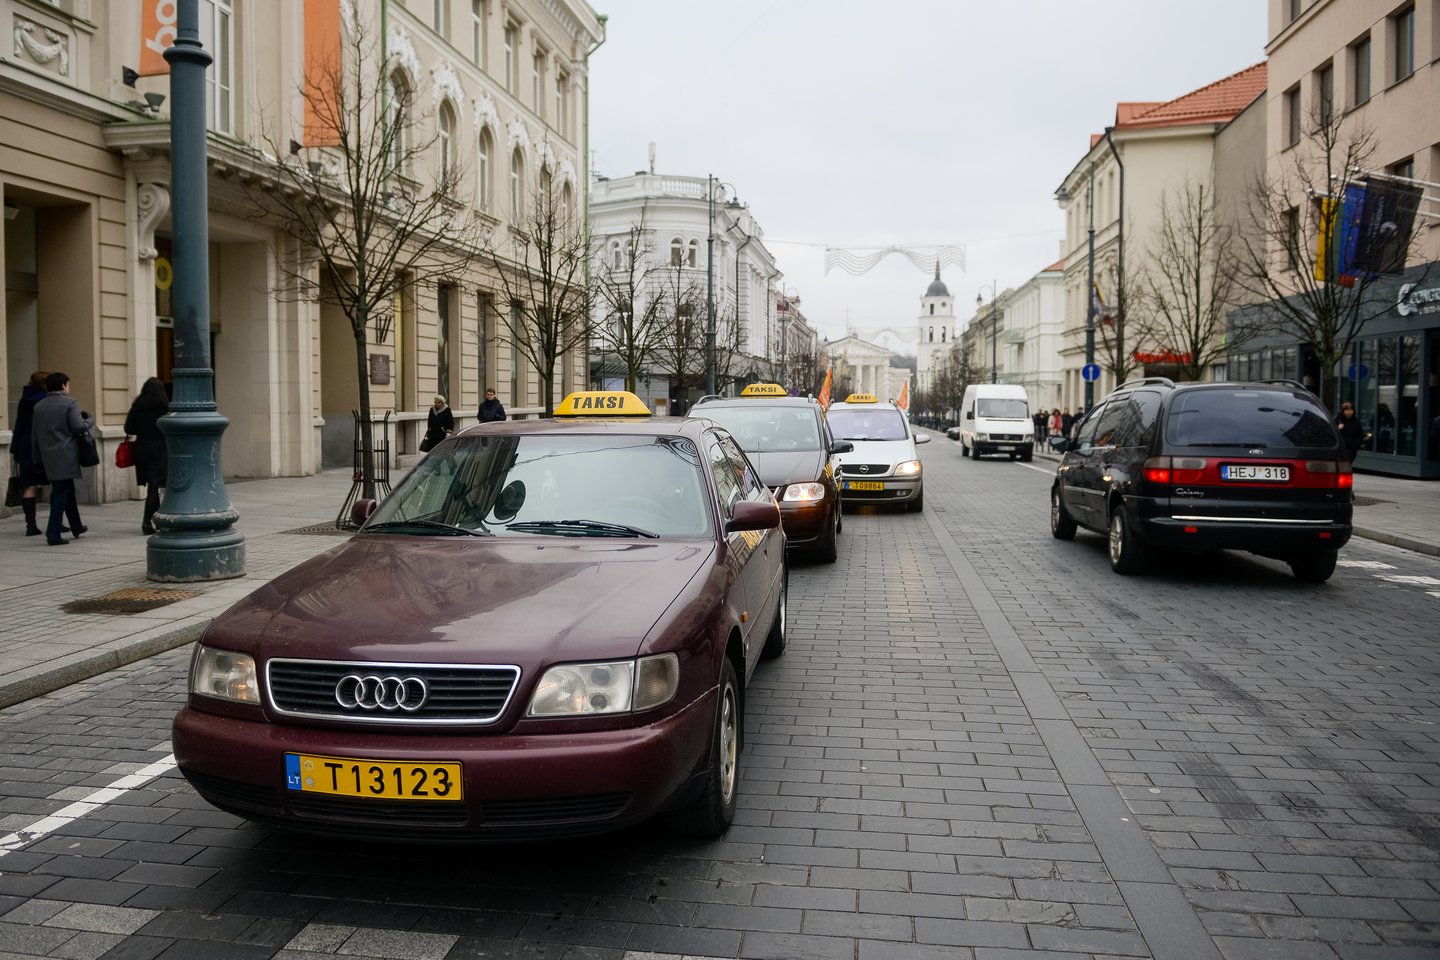 Pabrangę degalai koreguoja taksi ir pavežėjimo paslaugų kainas.<br>J.Stacevičiaus nuotr.